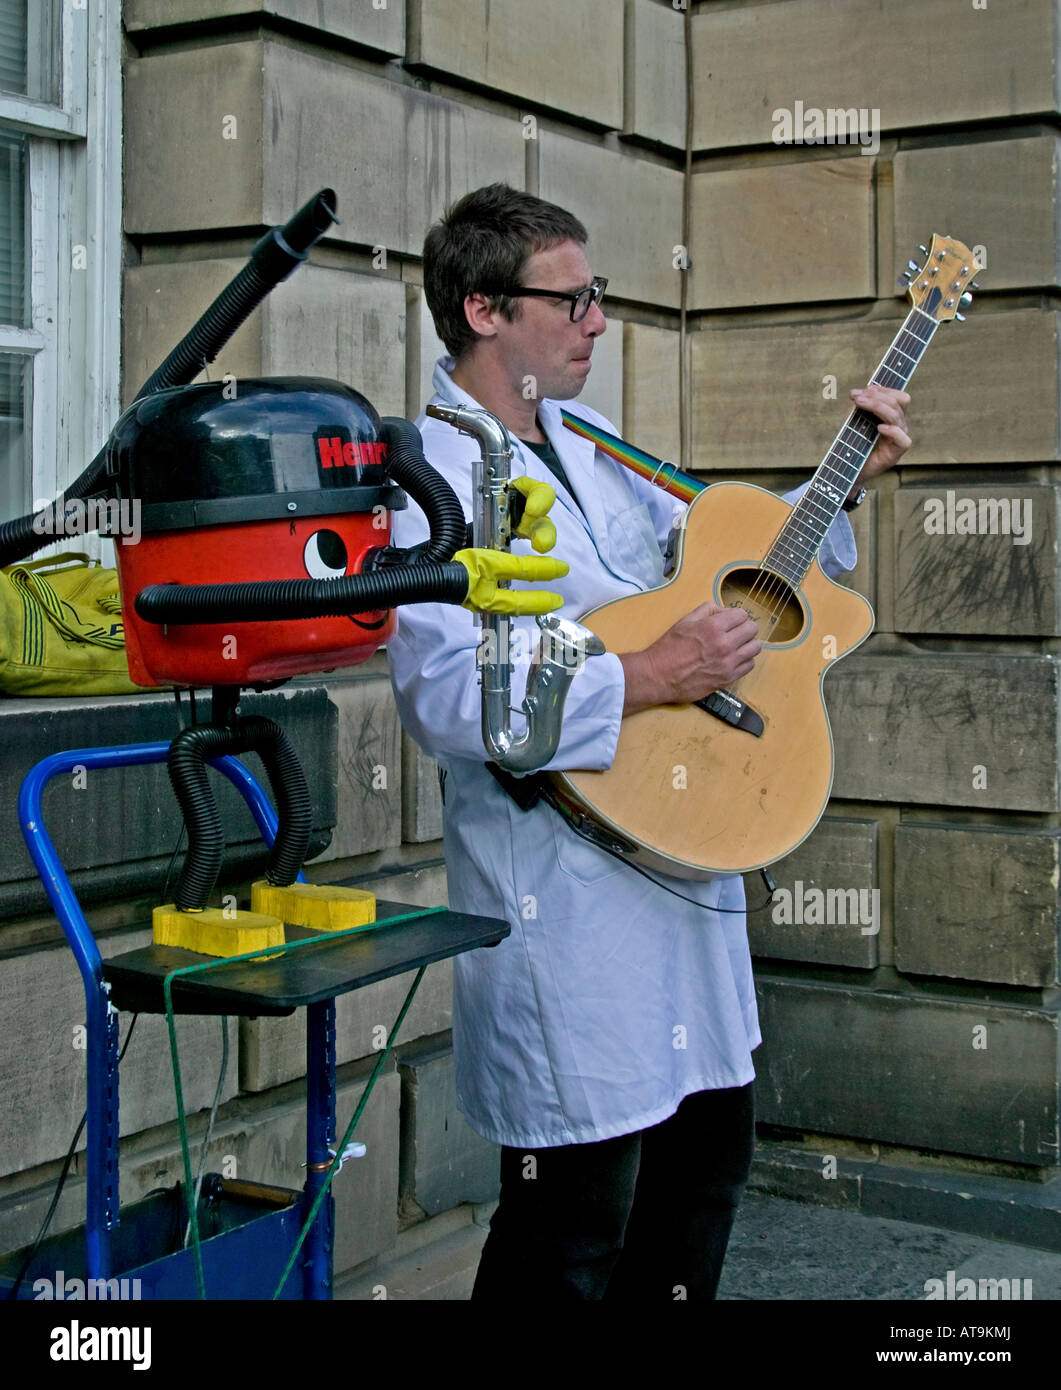 Street Performer spielt Gitarre während am Saxophon begleitet von Vakuum Edinburgh Fringe Festival, Schottland, Vereinigtes Königreich, Stockfoto